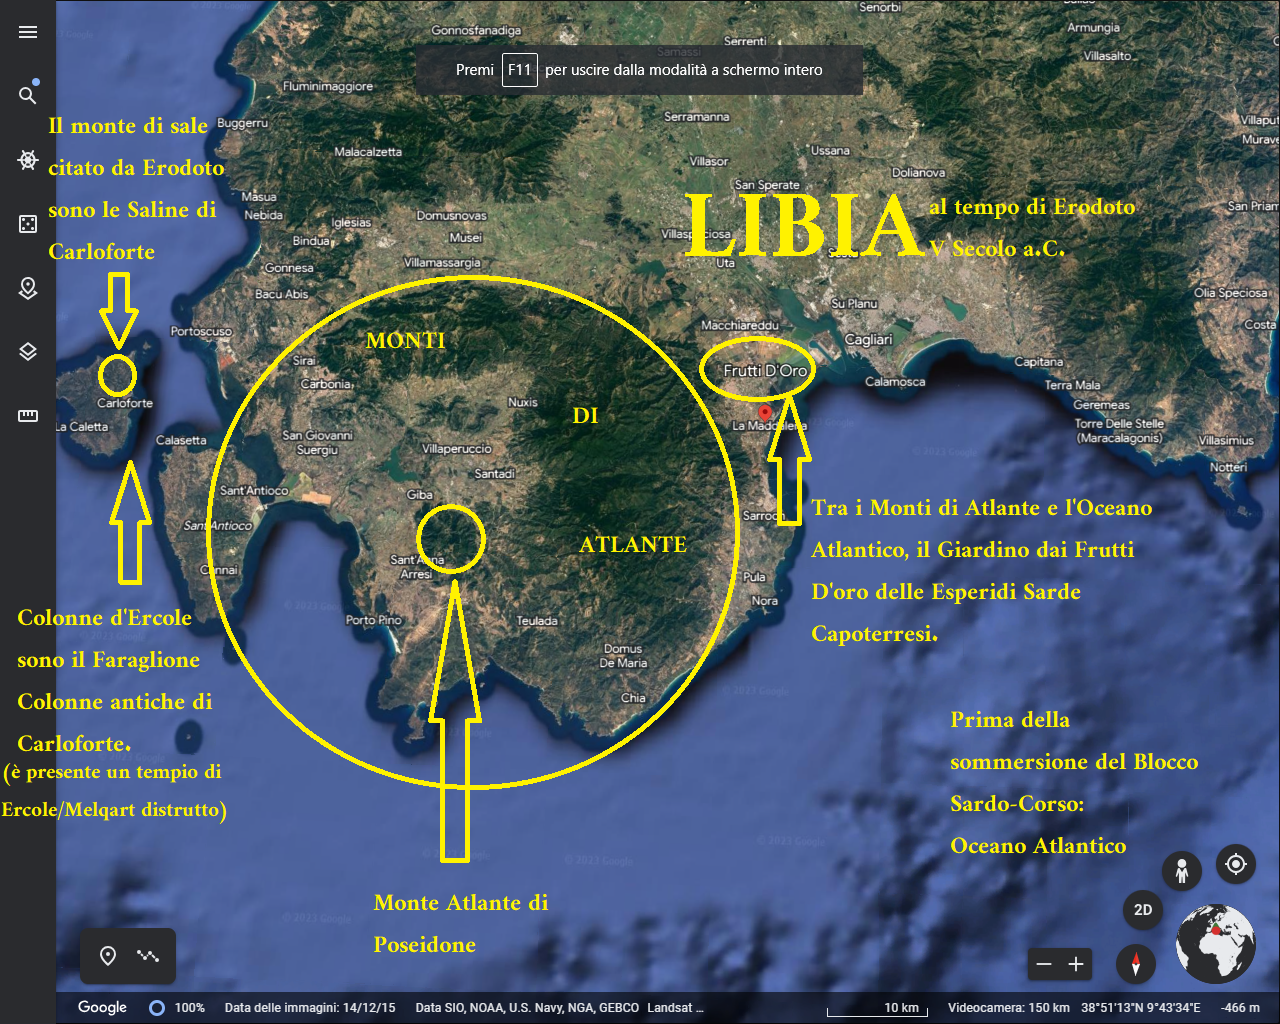 Fino ad oggi la cartografia della Libia Erodotea è stata sbagliata: la Liibia è la provincia di Cagliari